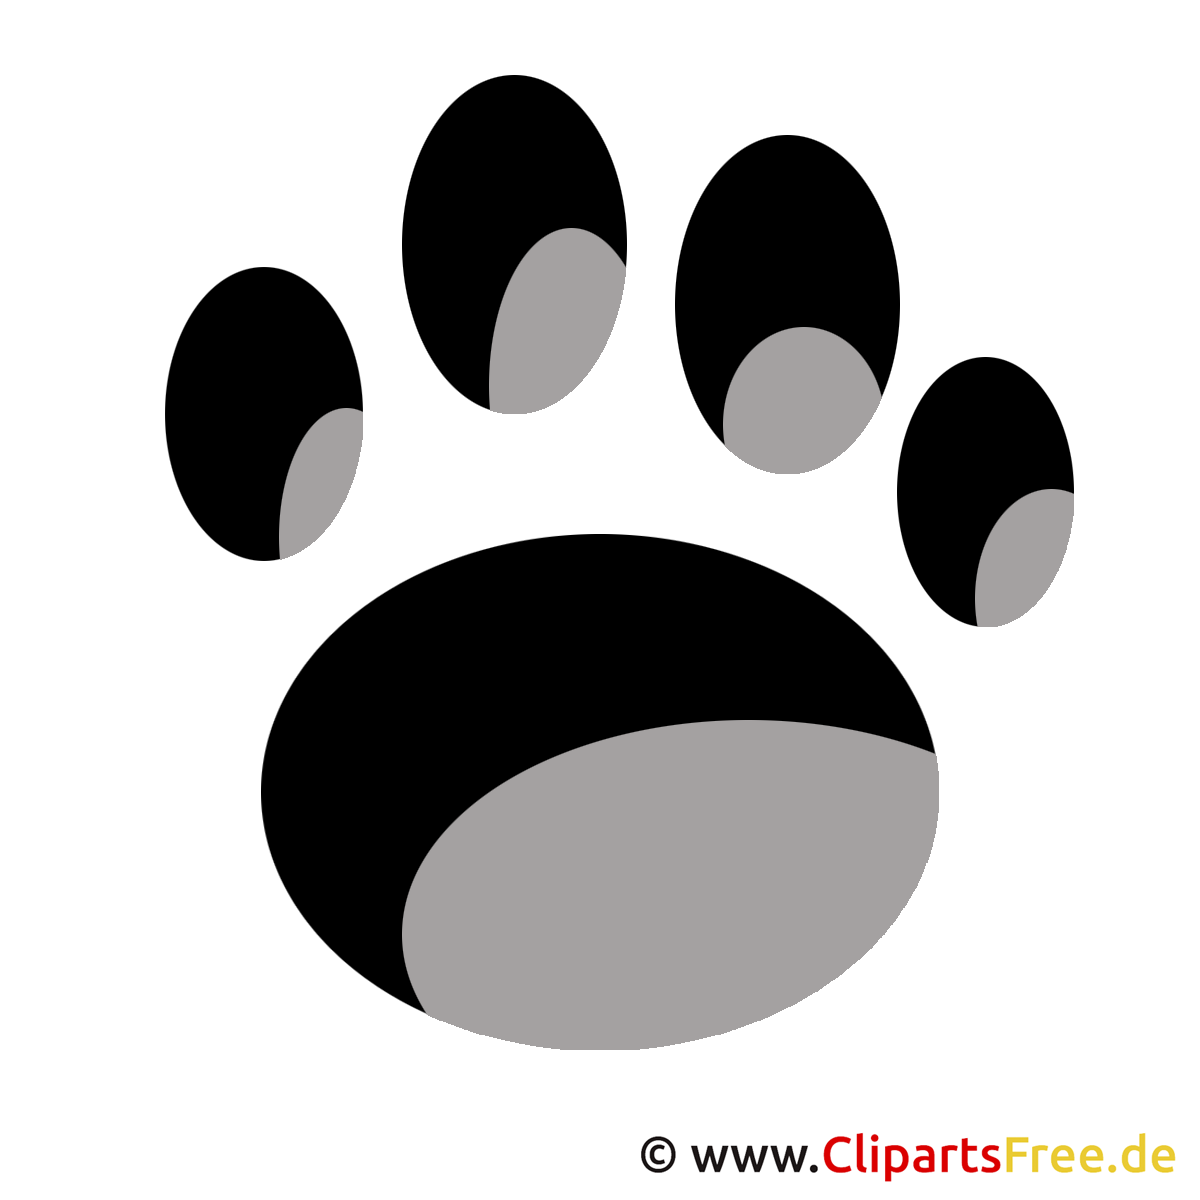 cliparts hunde - photo #15